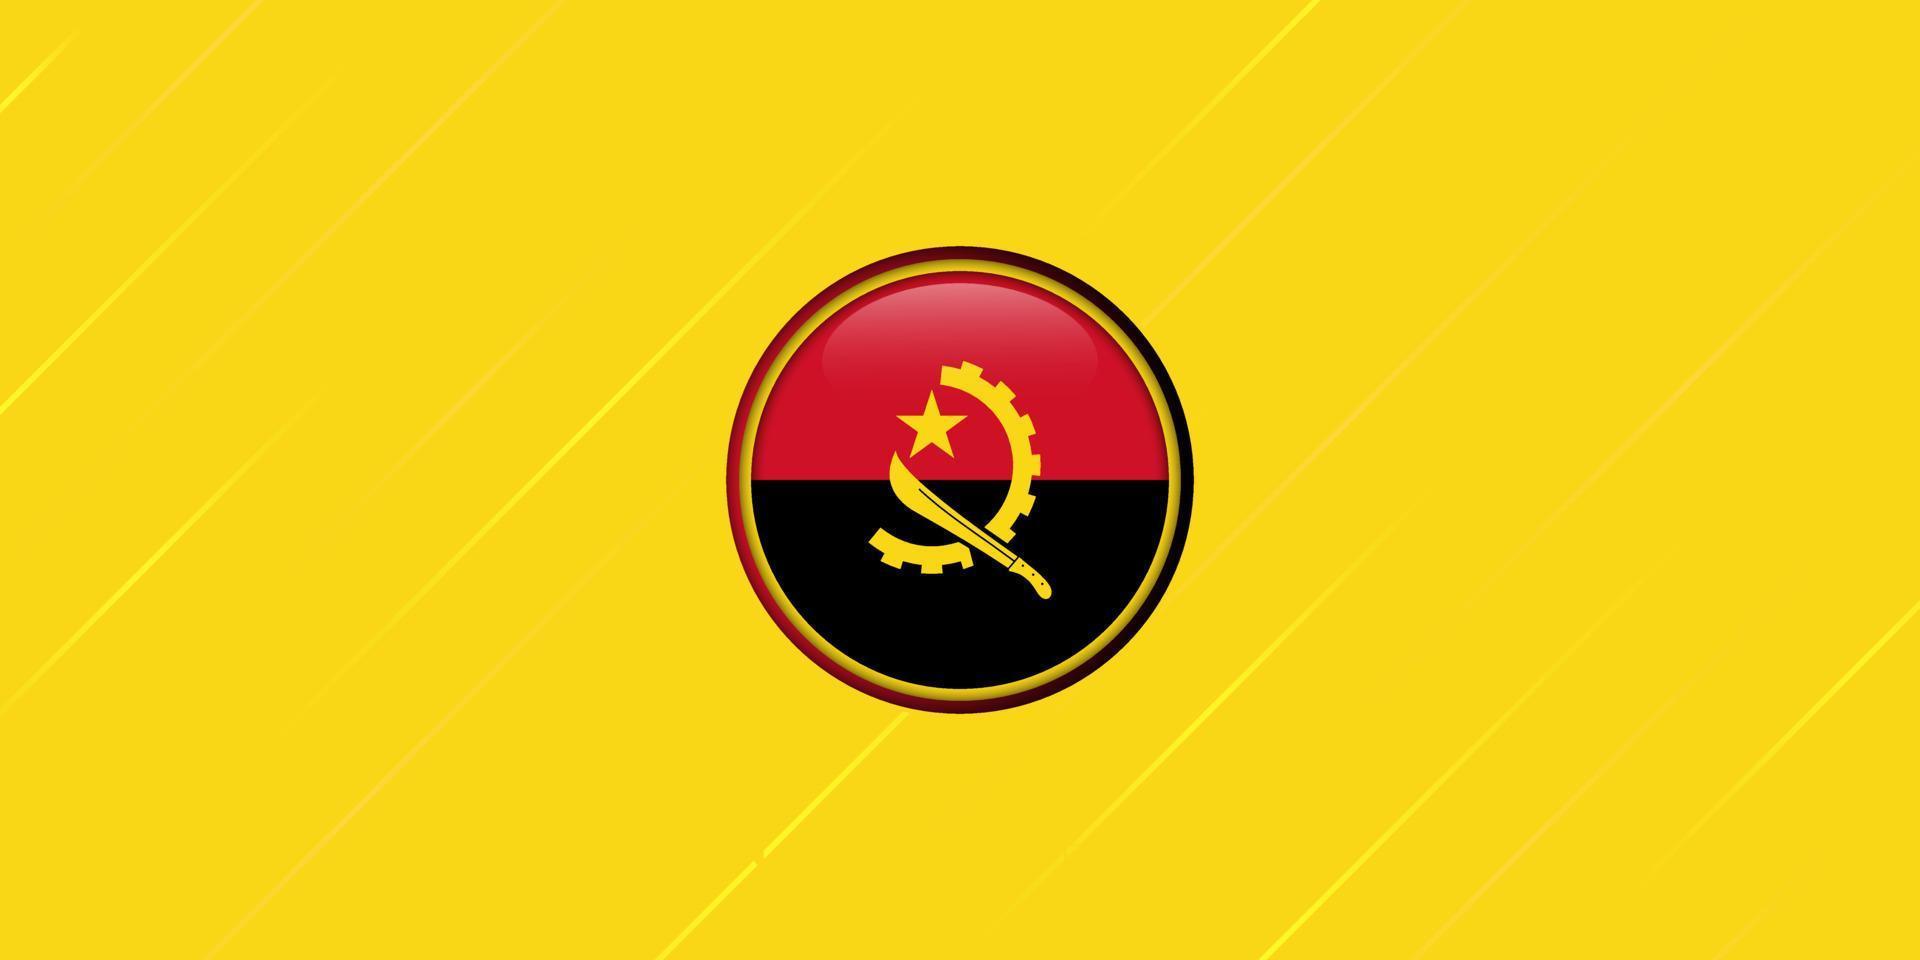 Angola-Kreis-Flaggendesign mit gelben und roten Lichtlinien. angolas unabhängigkeitstag hintergrund. vektor